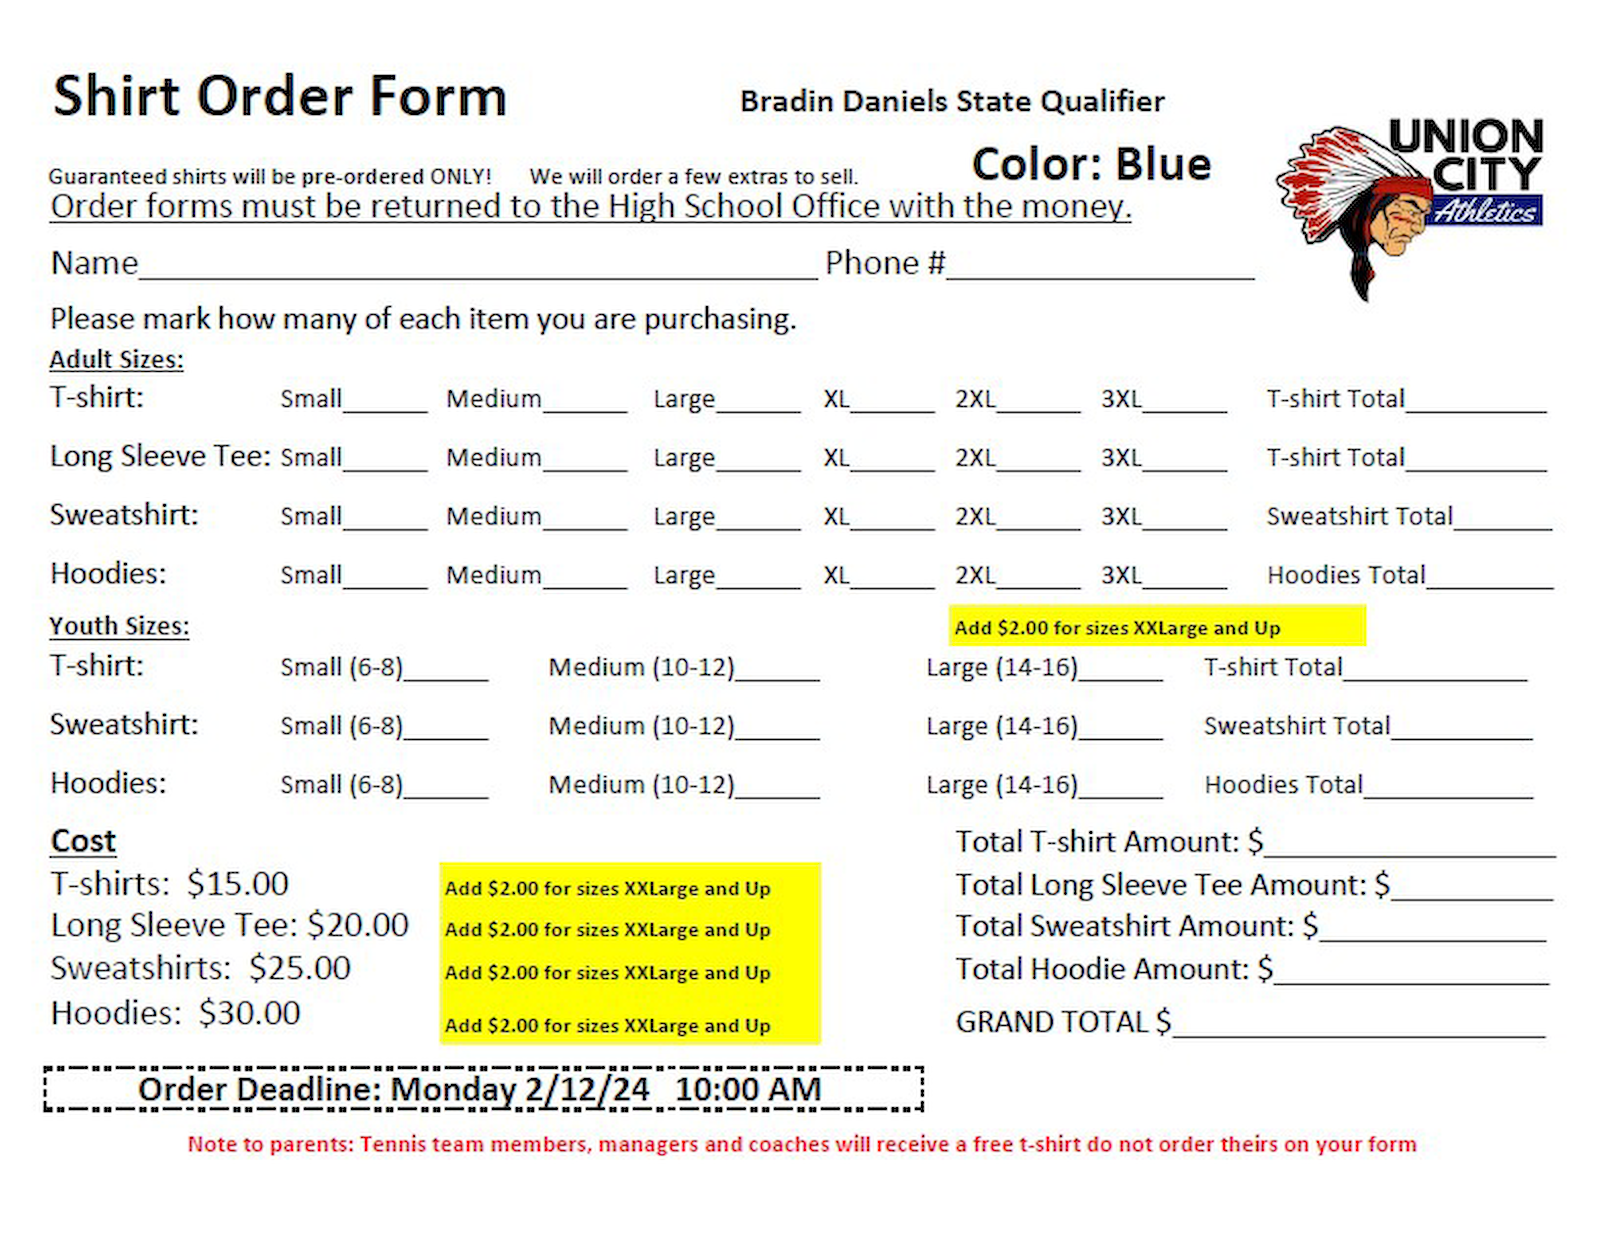 Wrestling State shirt order form slide.png